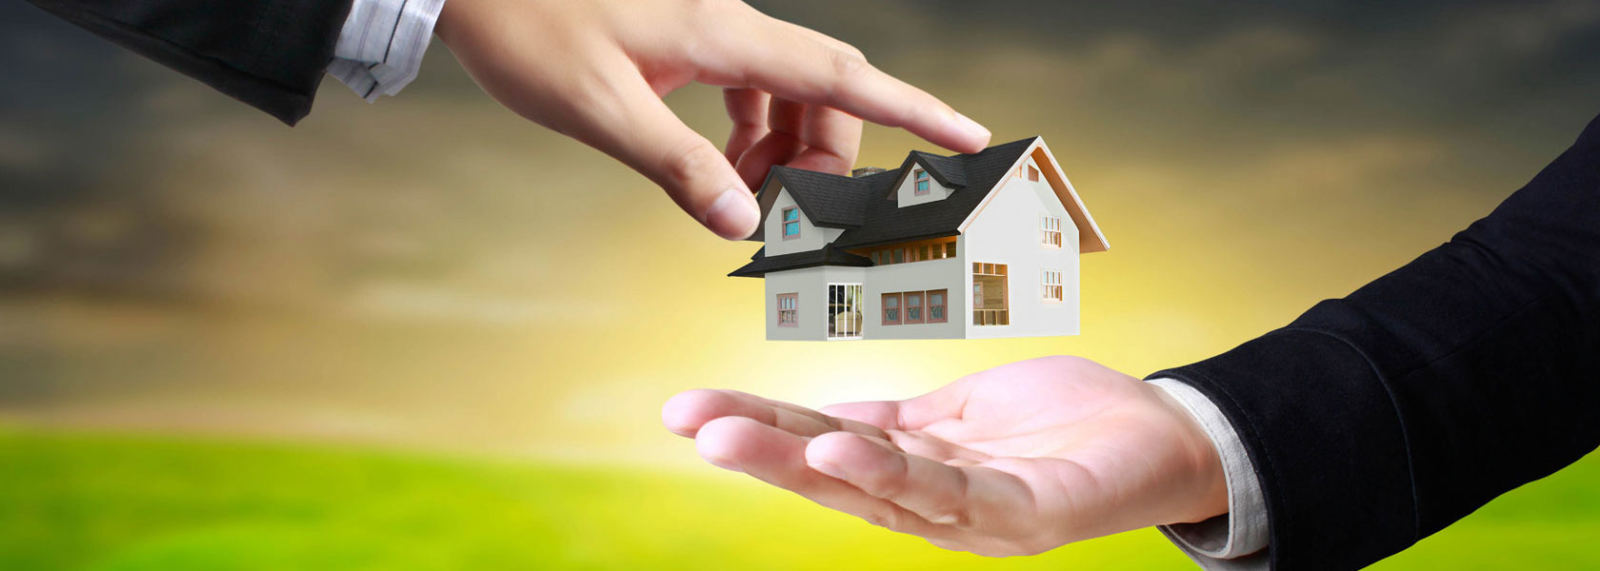 Правила оформления ипотечного кредита на покупку дома с земельным участком